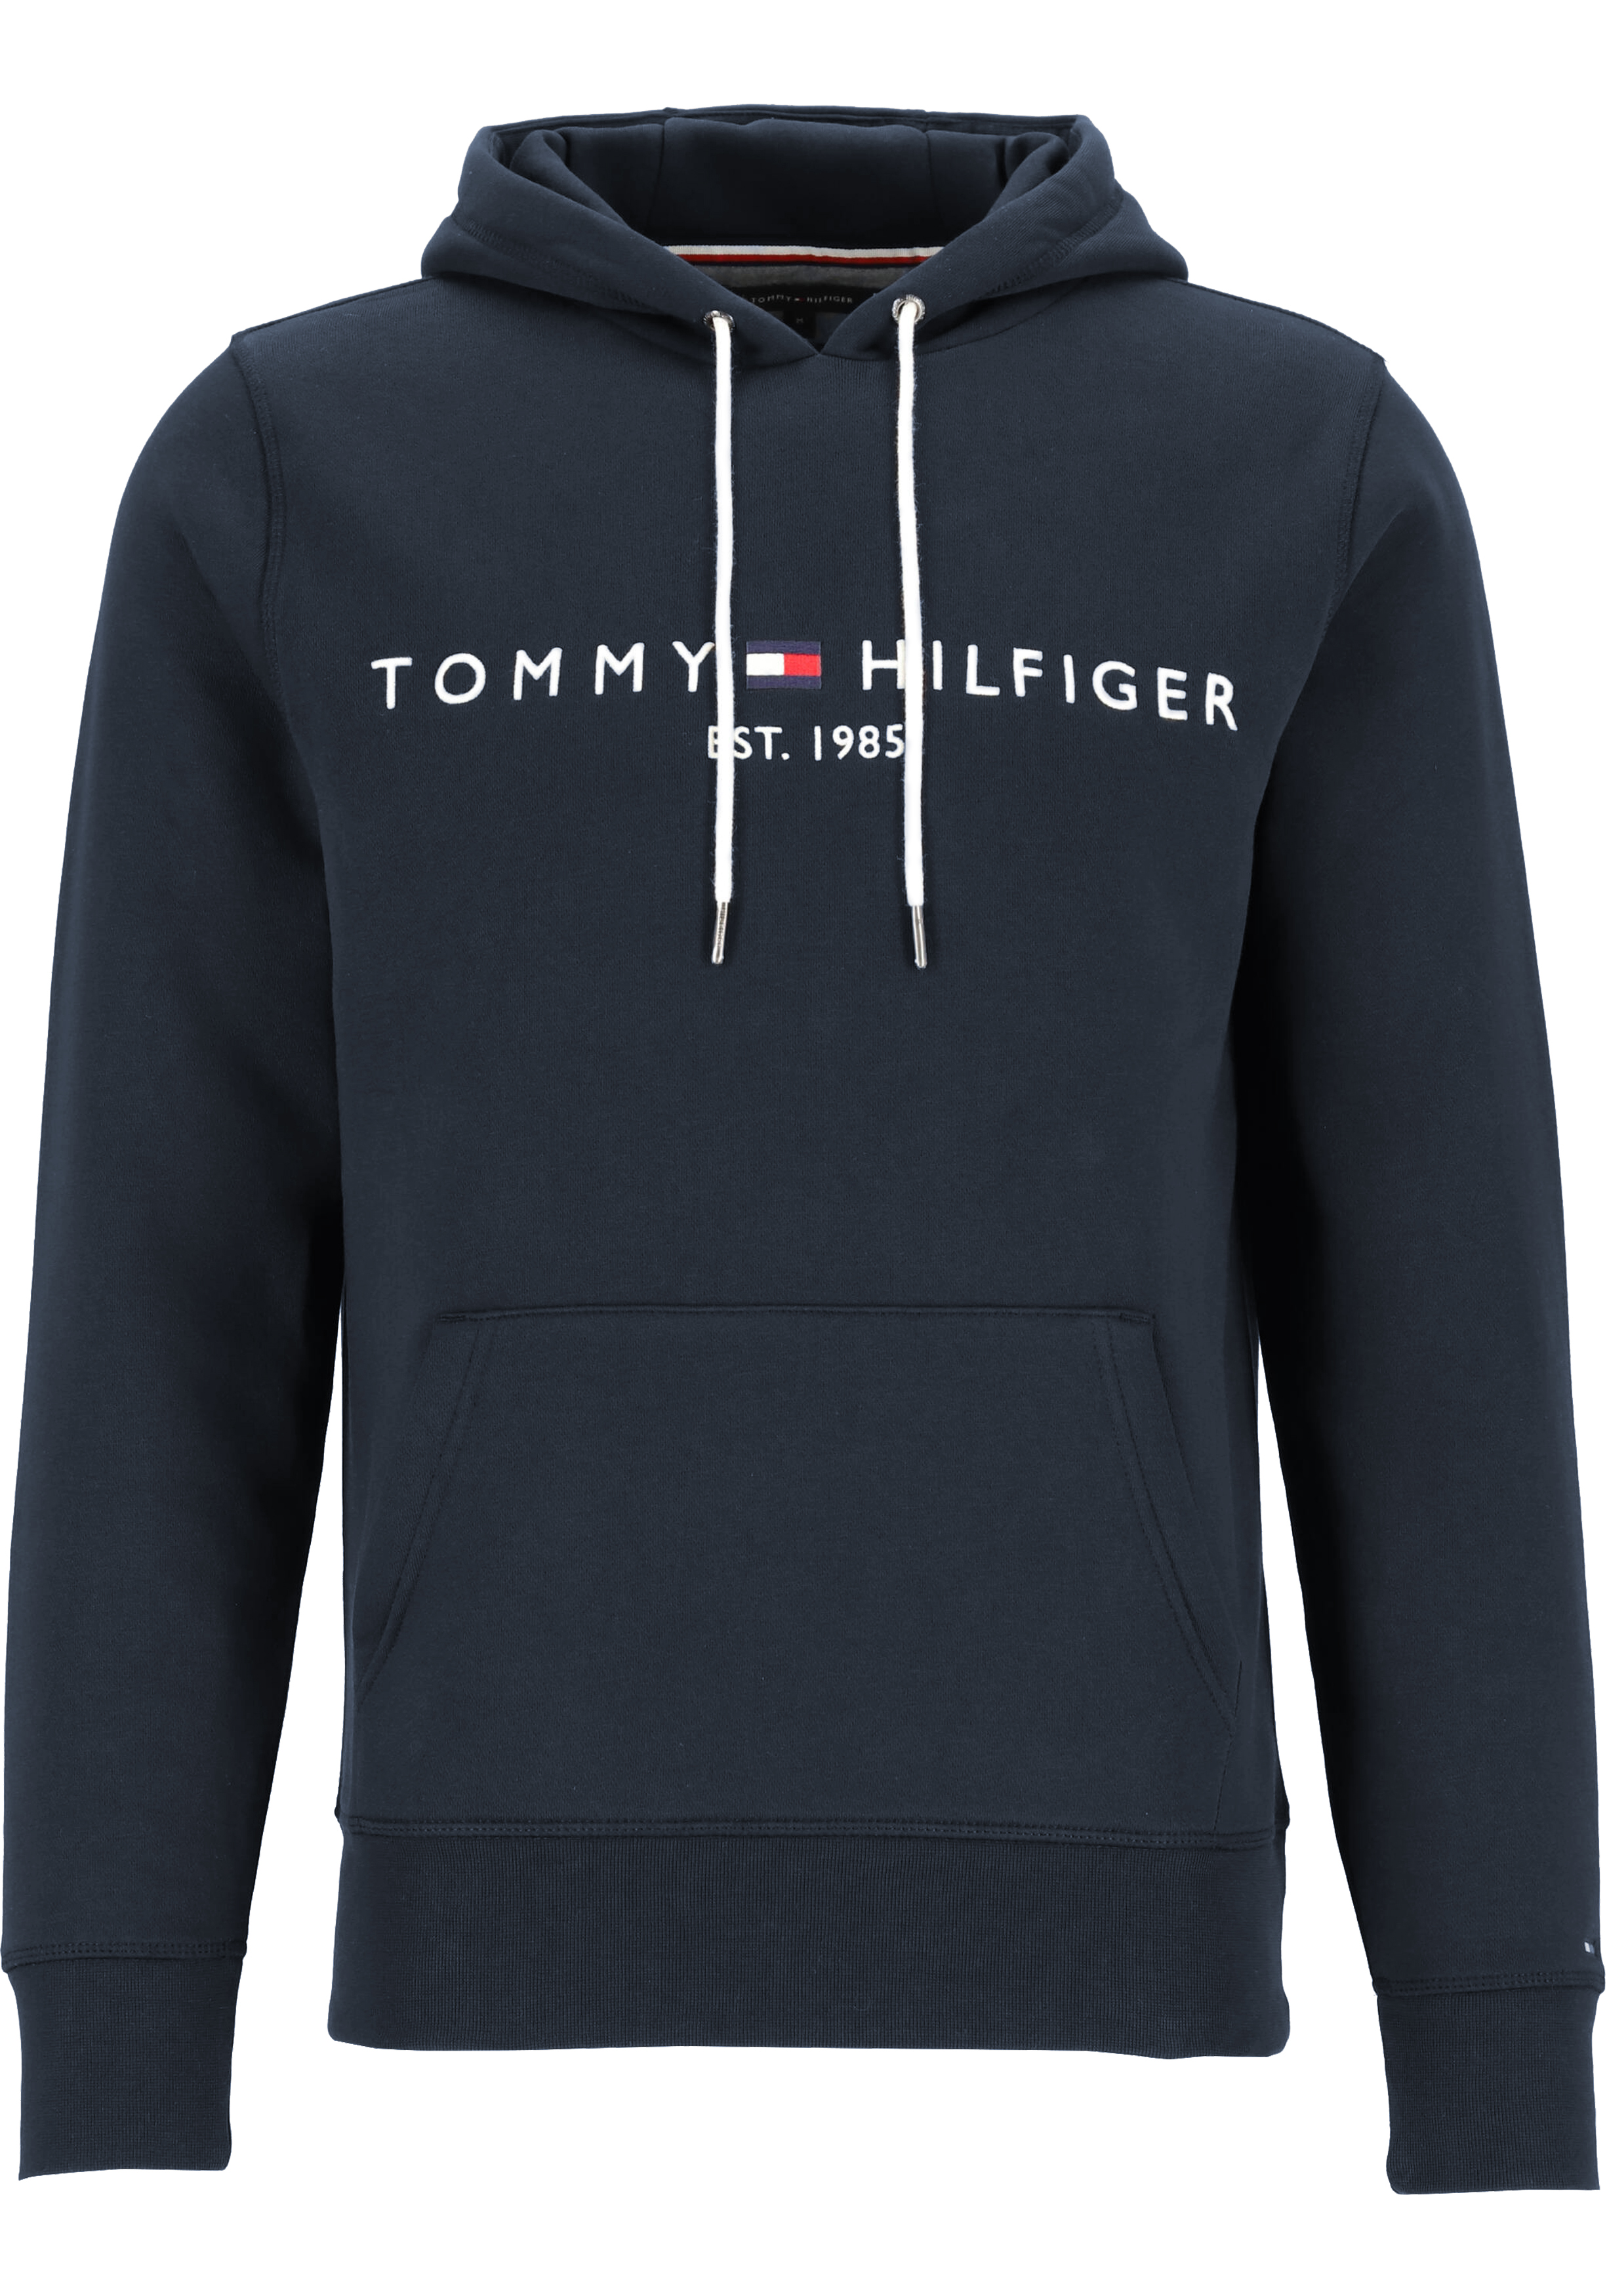 gebouw werkwoord Vertellen Tommy Hilfiger Core Tommy logo hoody, regular fit heren sweathoodie,... -  Shop de nieuwste voorjaarsmode